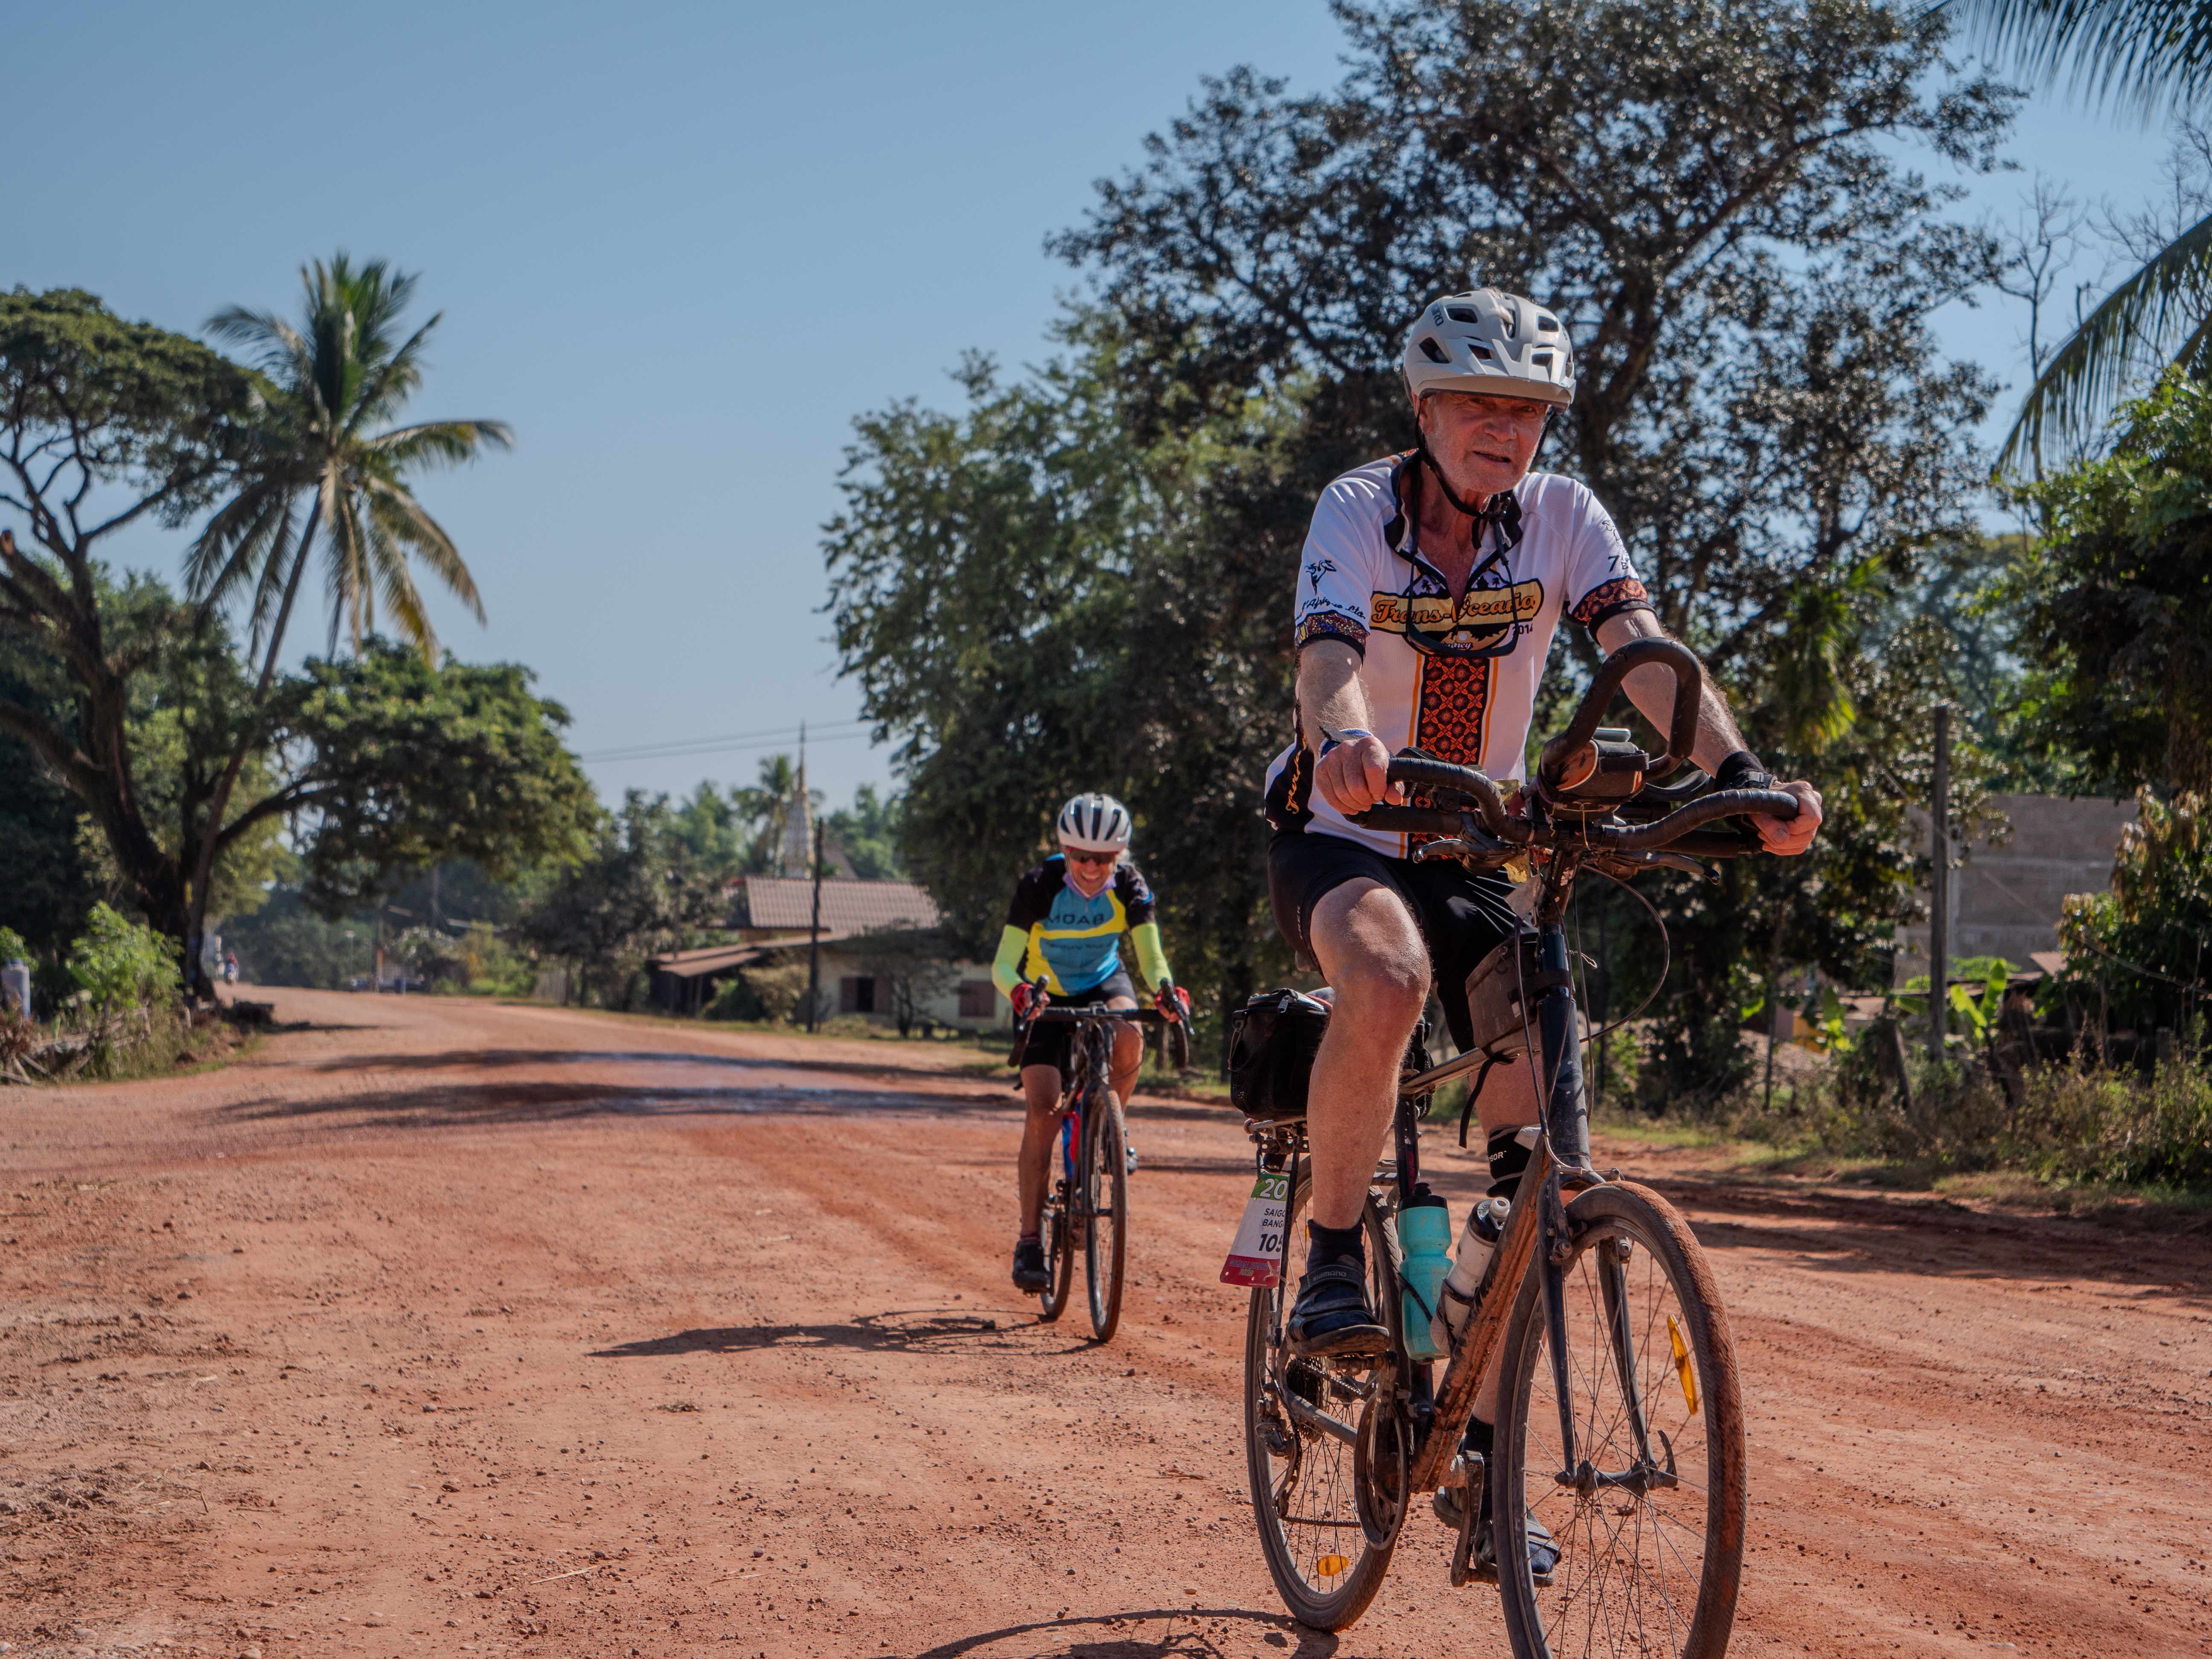 Resorna är till för alla som har fyllt 18 år och deltagarna kommer från hela världen. Här ses ett par av cyklisterna som tar sig fram på grusvägarna i Mekong.